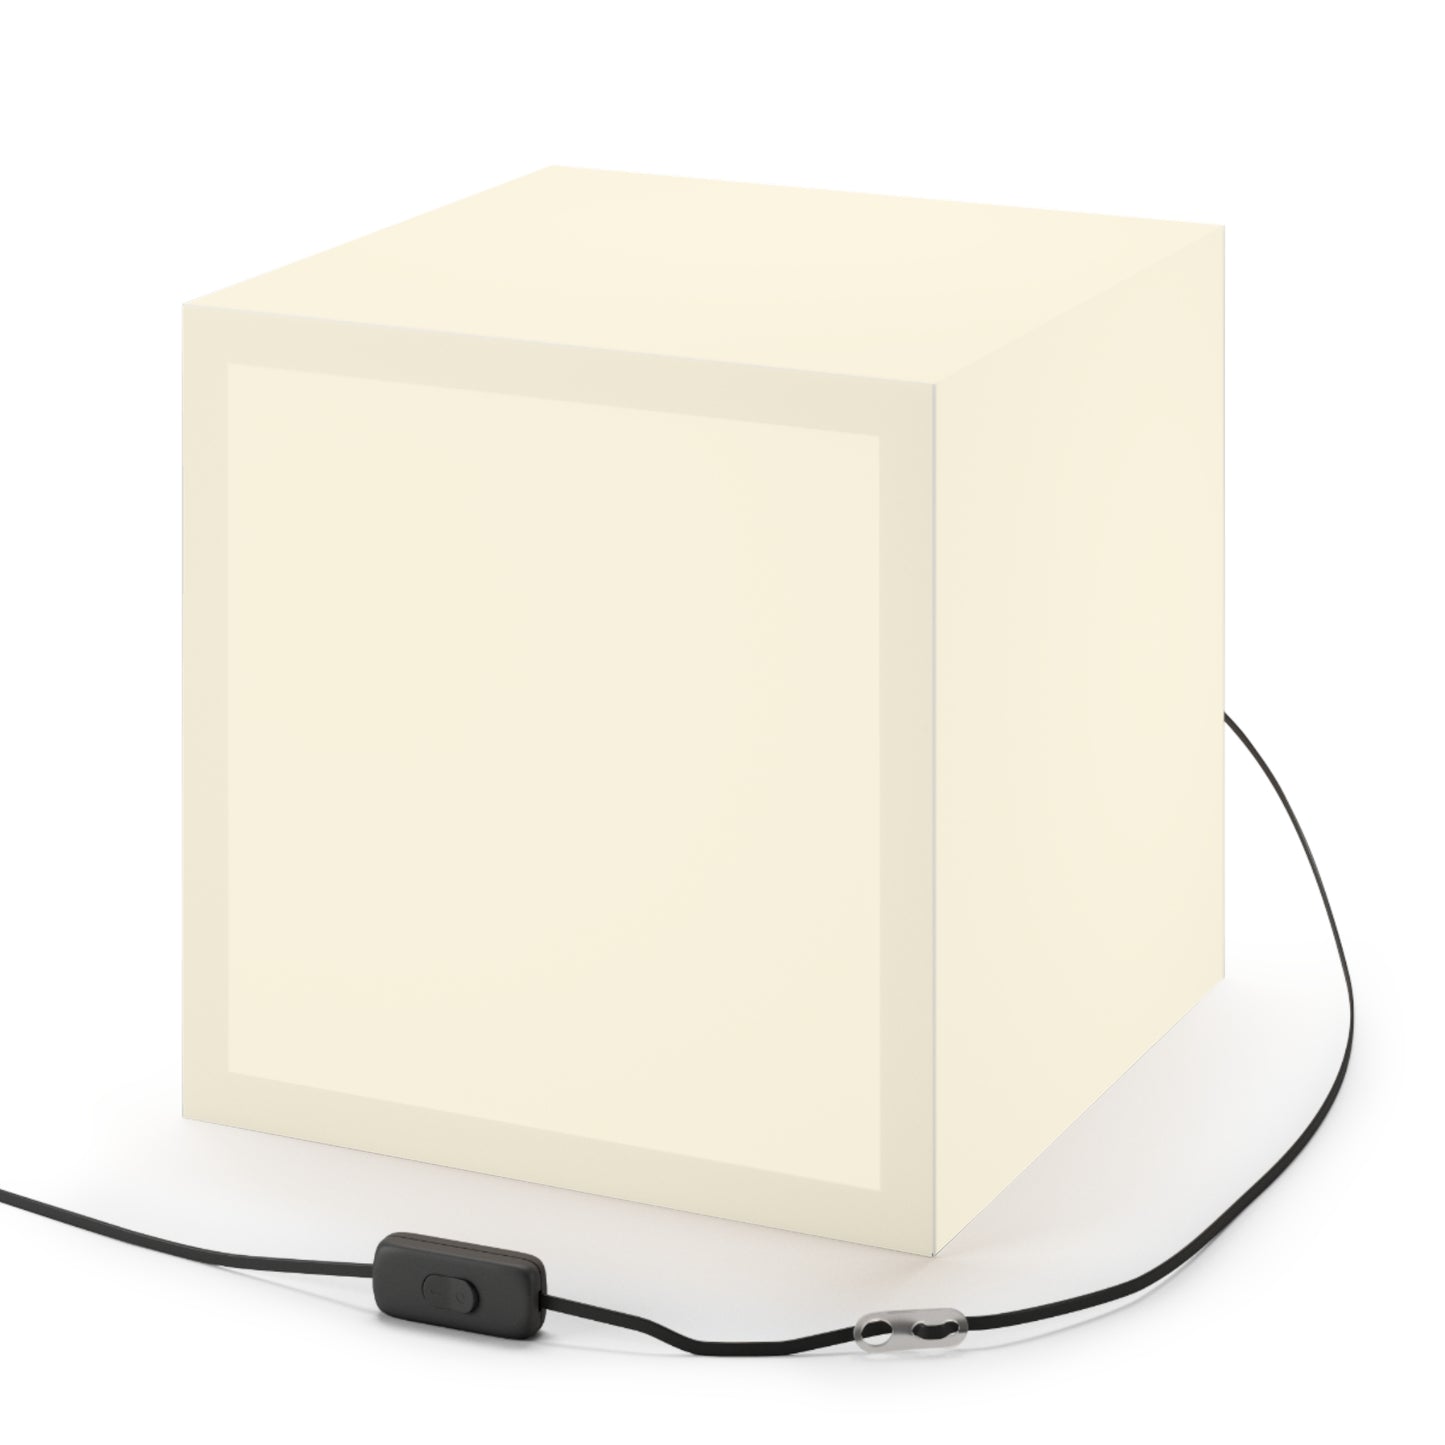 hommes 003 | Light Cube Lamp